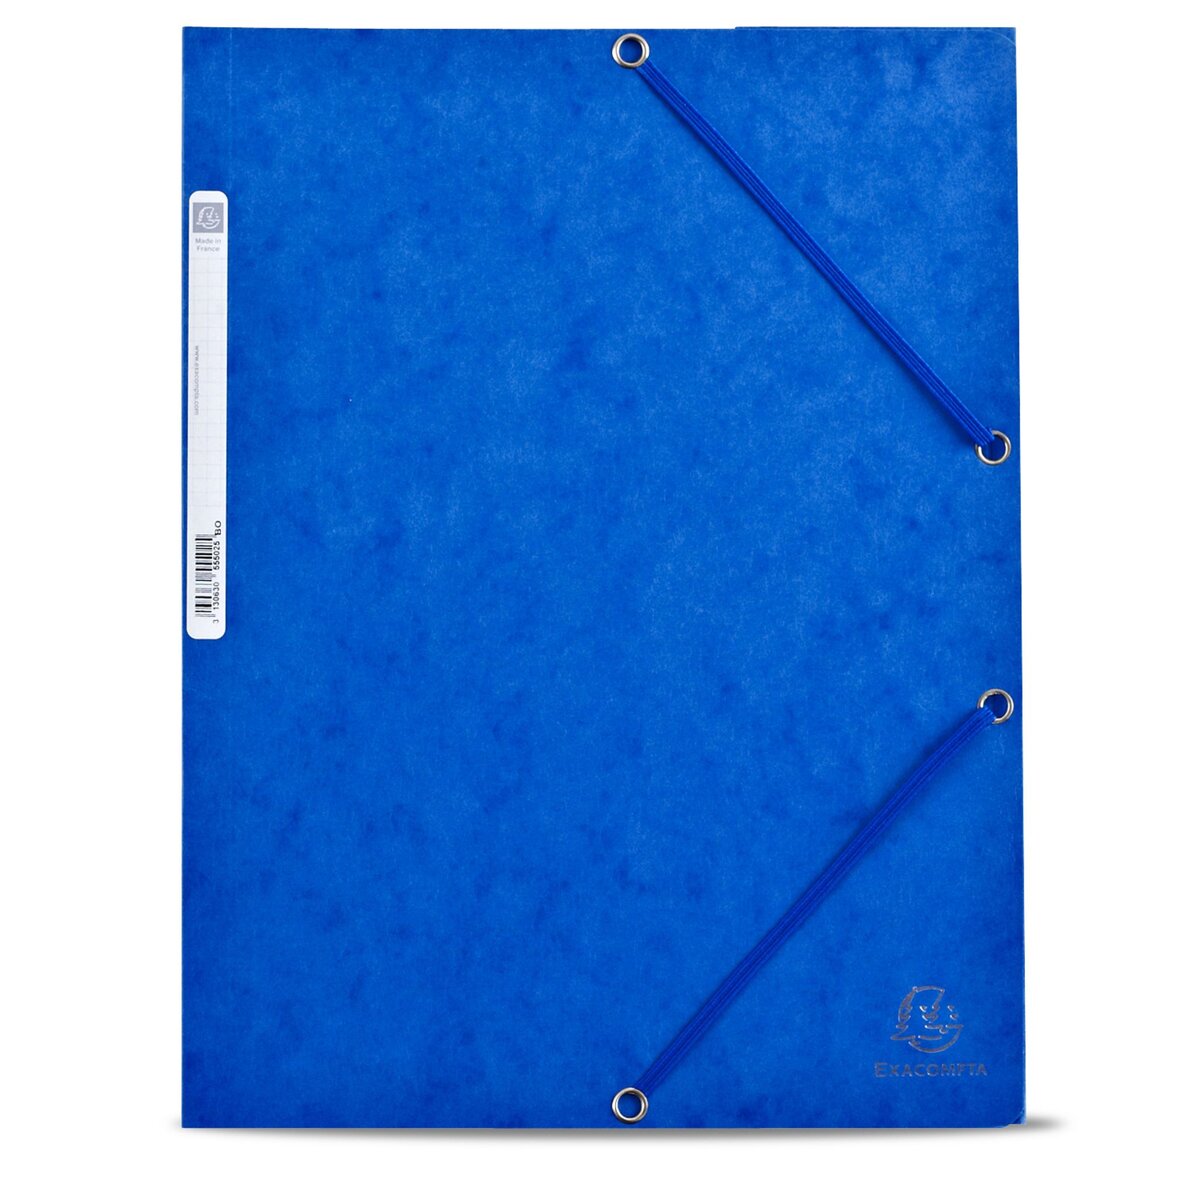 EXACOMPTA Chemise cartonnée à élastique 24x32cm 3 rabats bleu